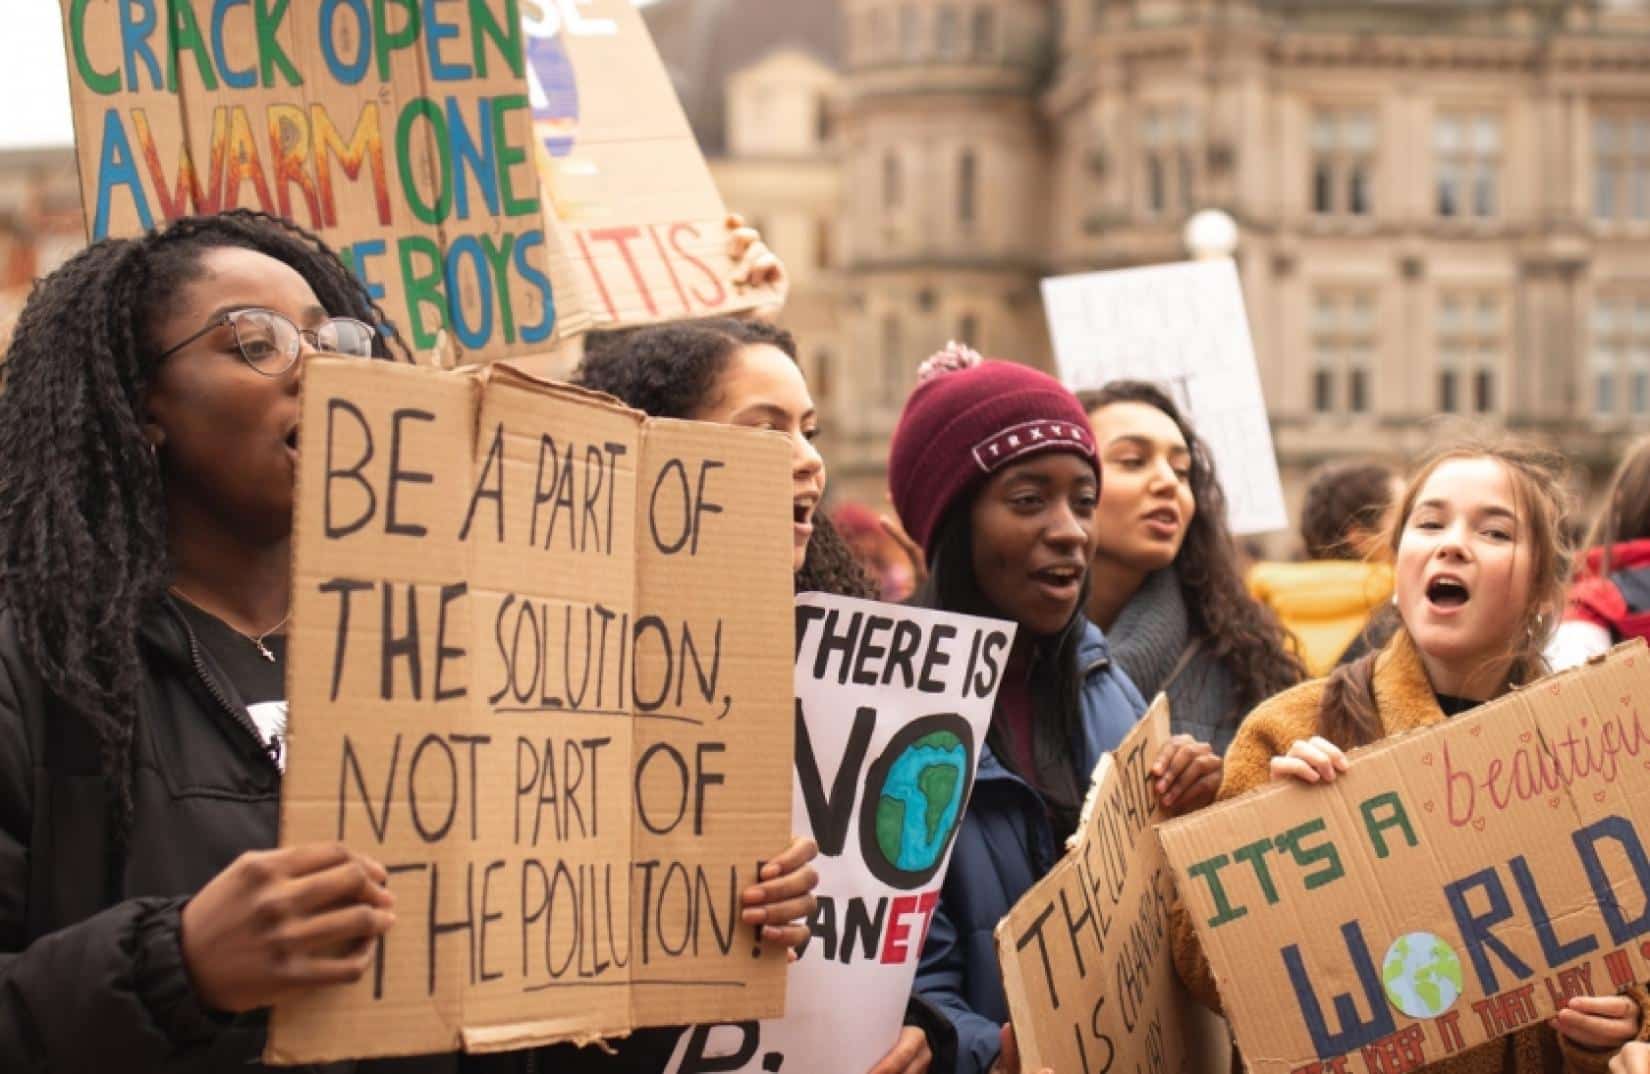 Jovens protestam em evento sobre o clima (Foto: Callum Shaw/Unsplash)